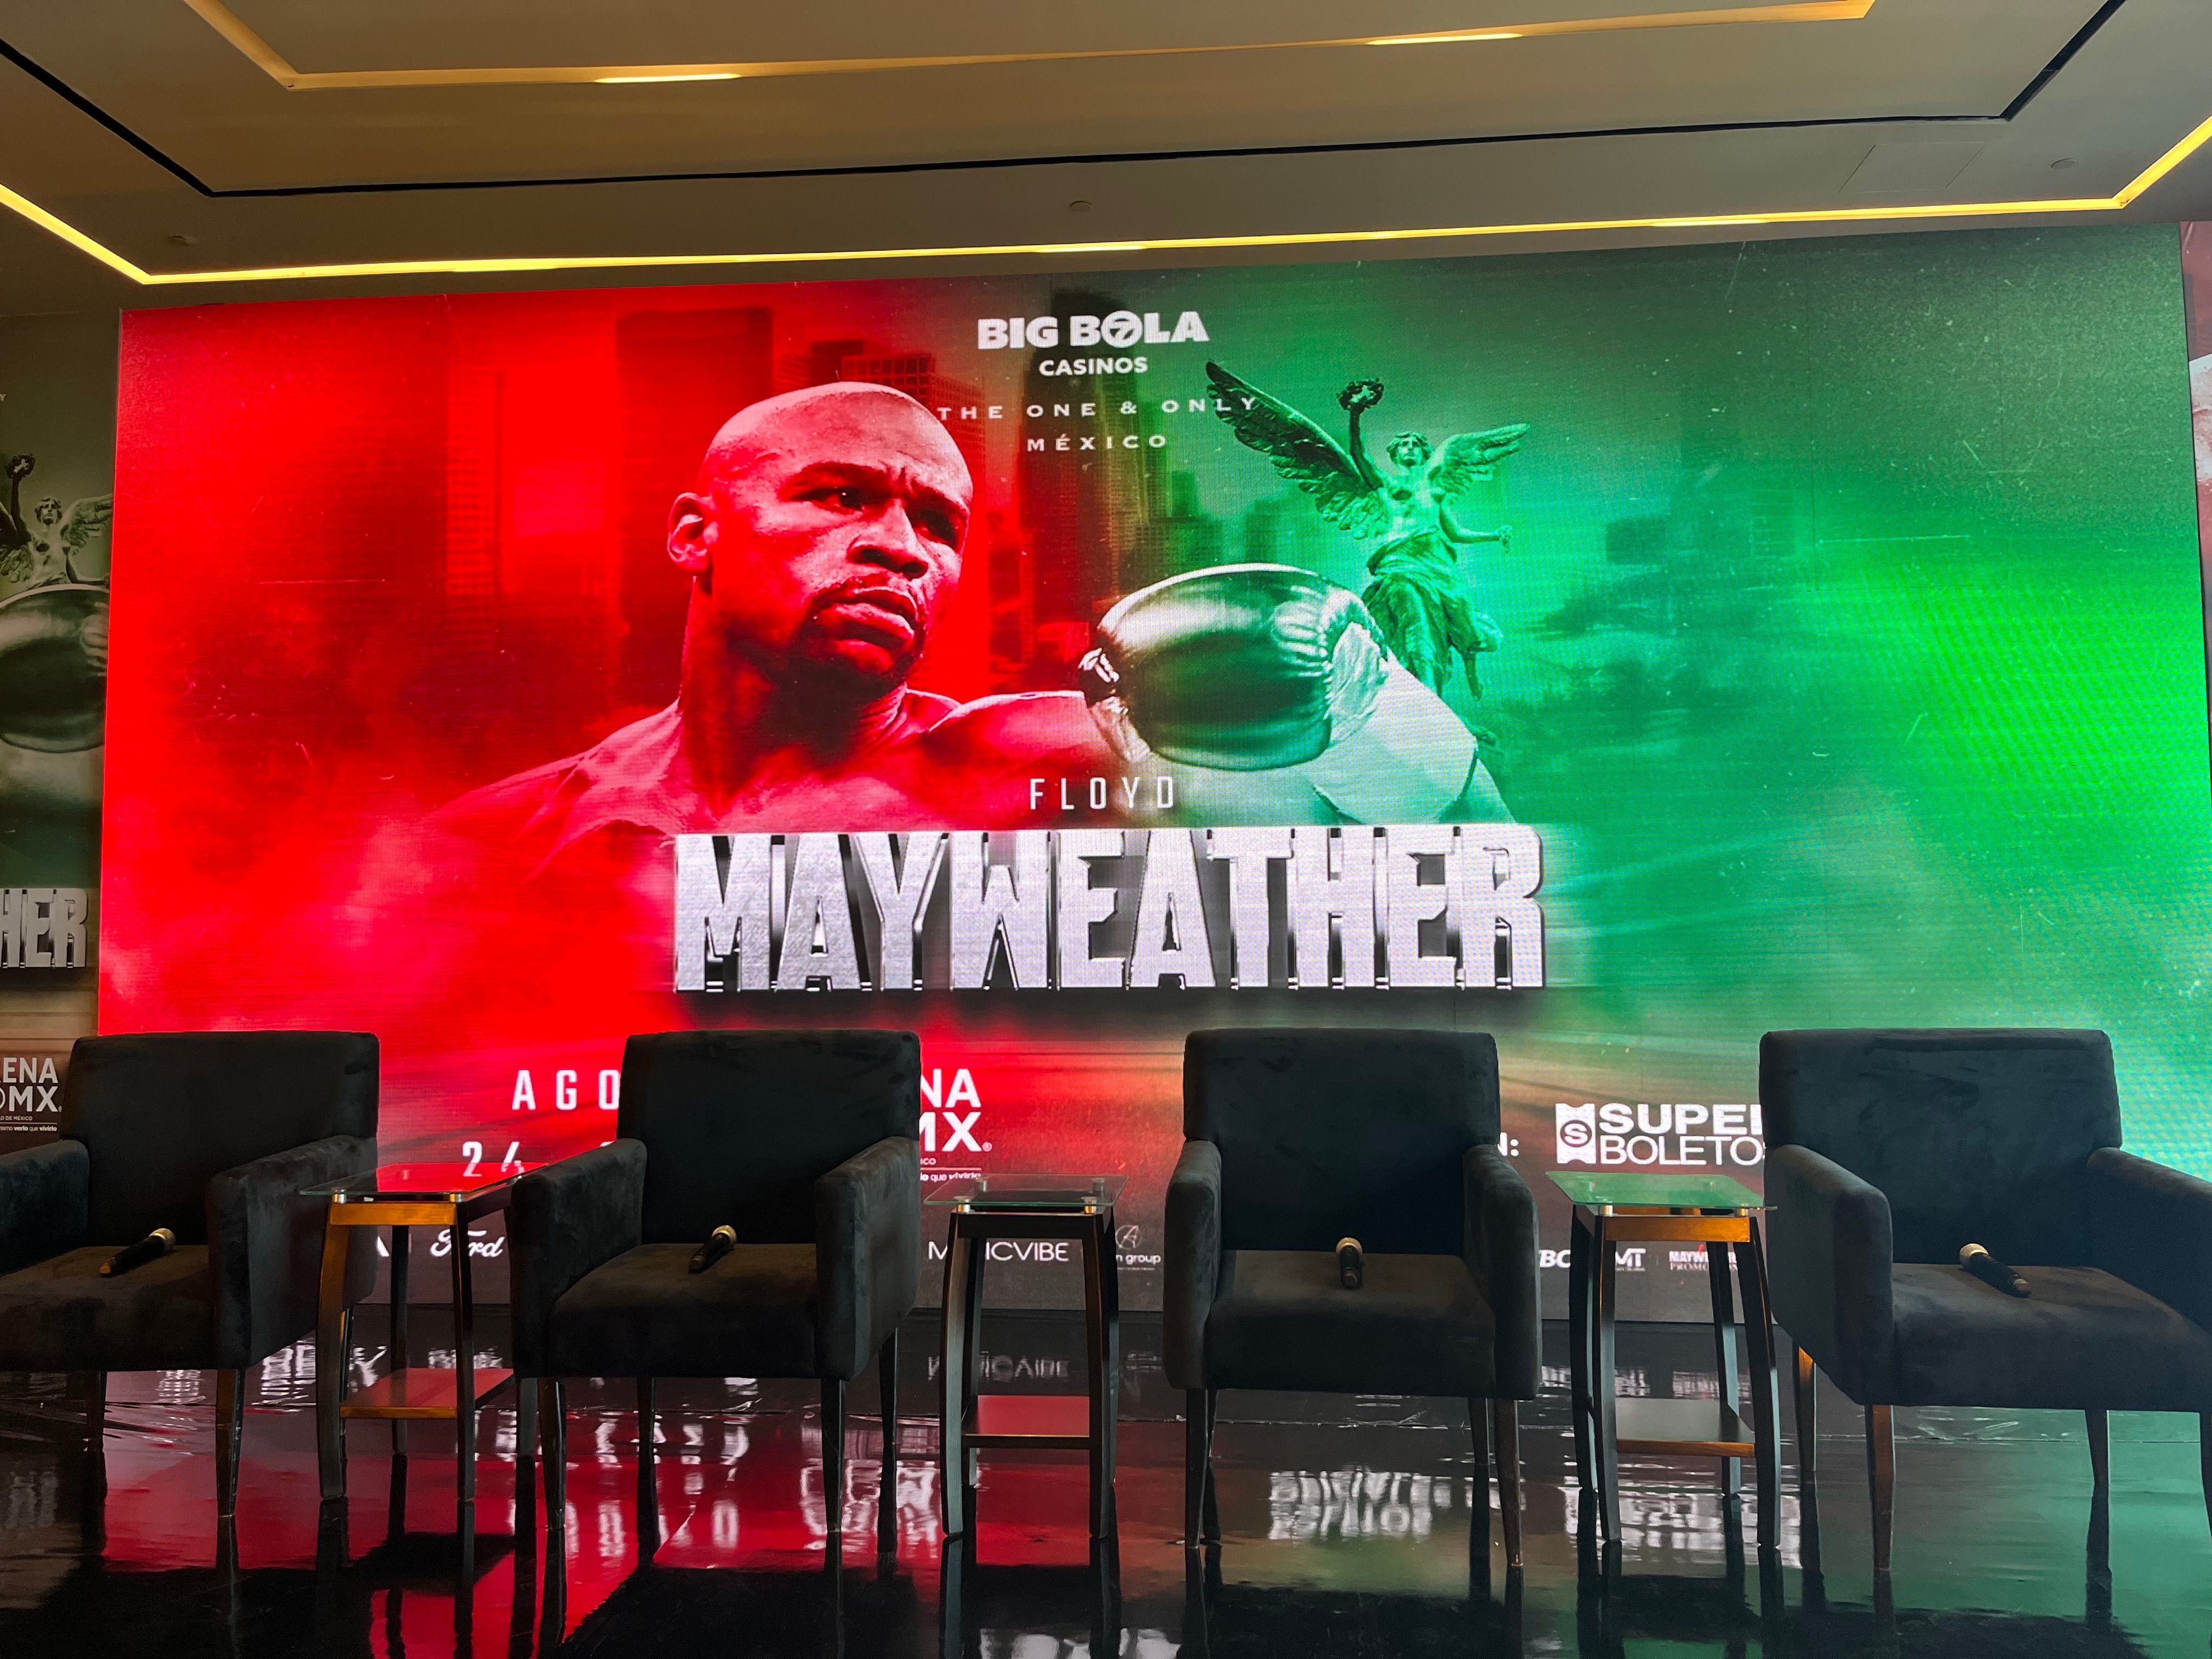 Conferencia de prensa sobre la pelea de Floyd Mayeather en México. (Foto: Brenda Escudero / El Financiero)